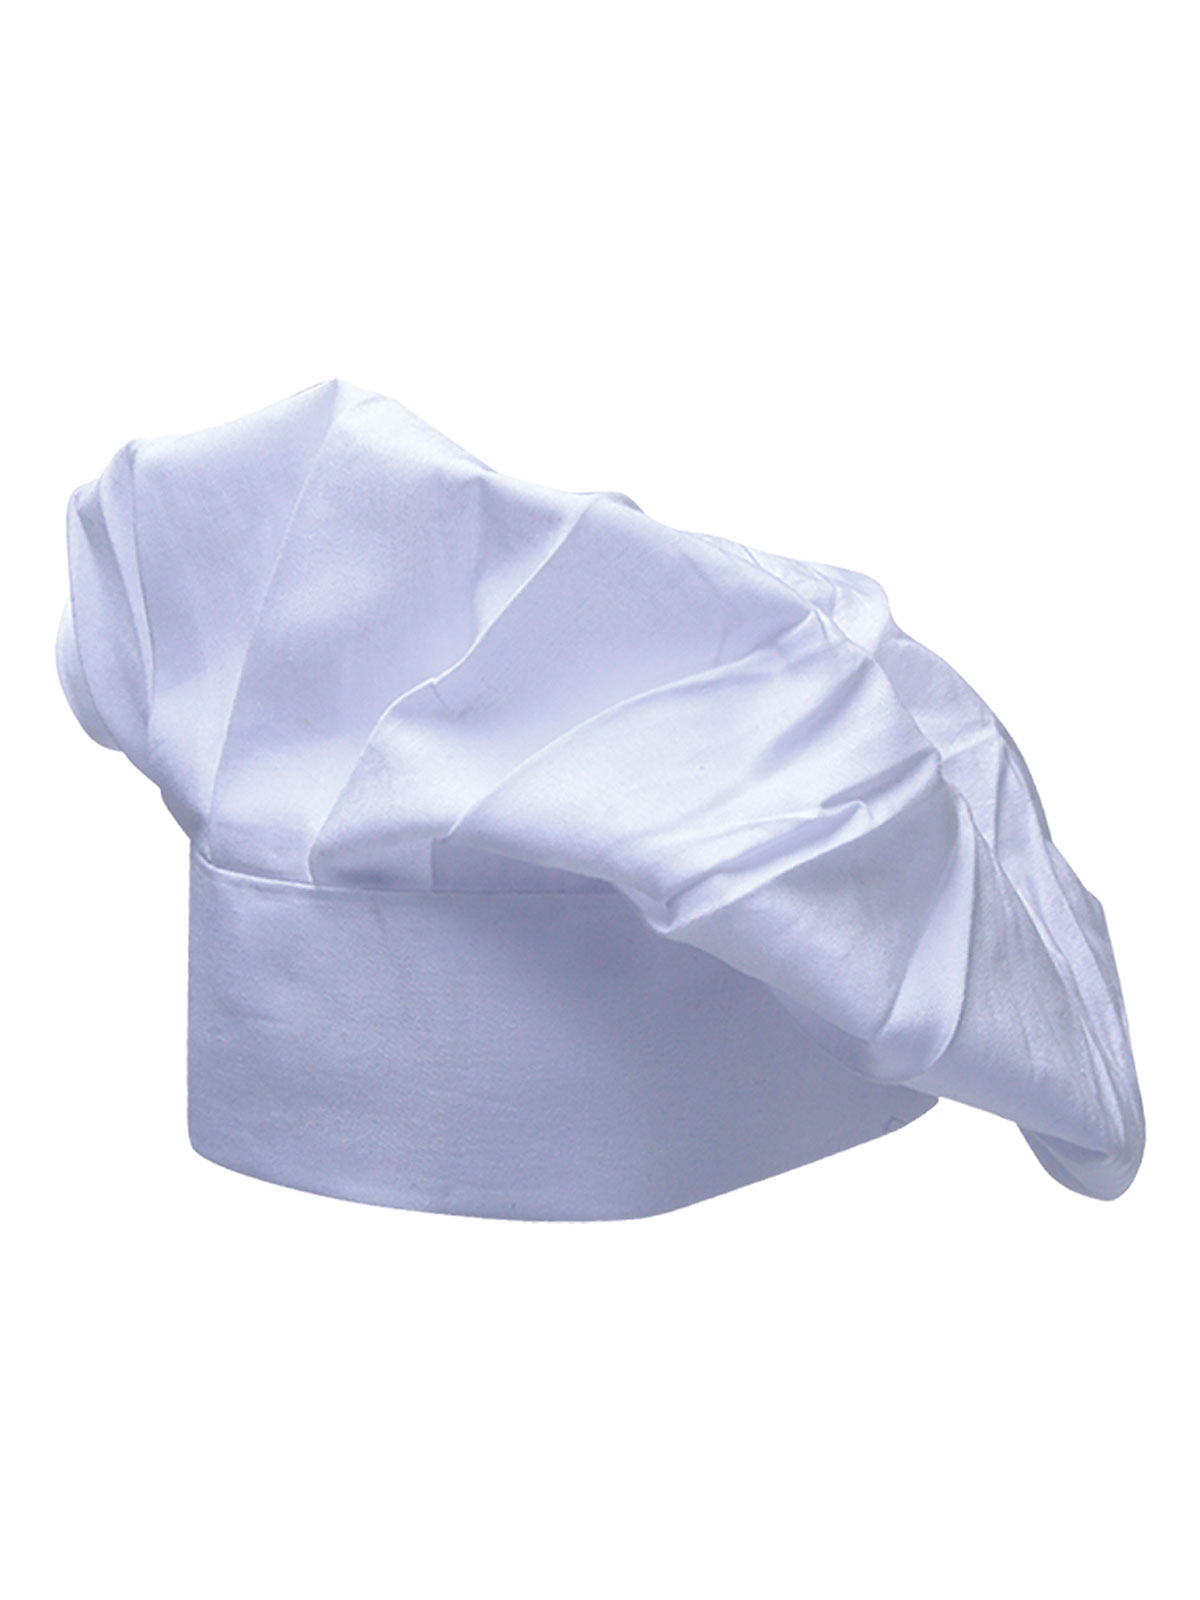 chefs-hat-philip-white.webp